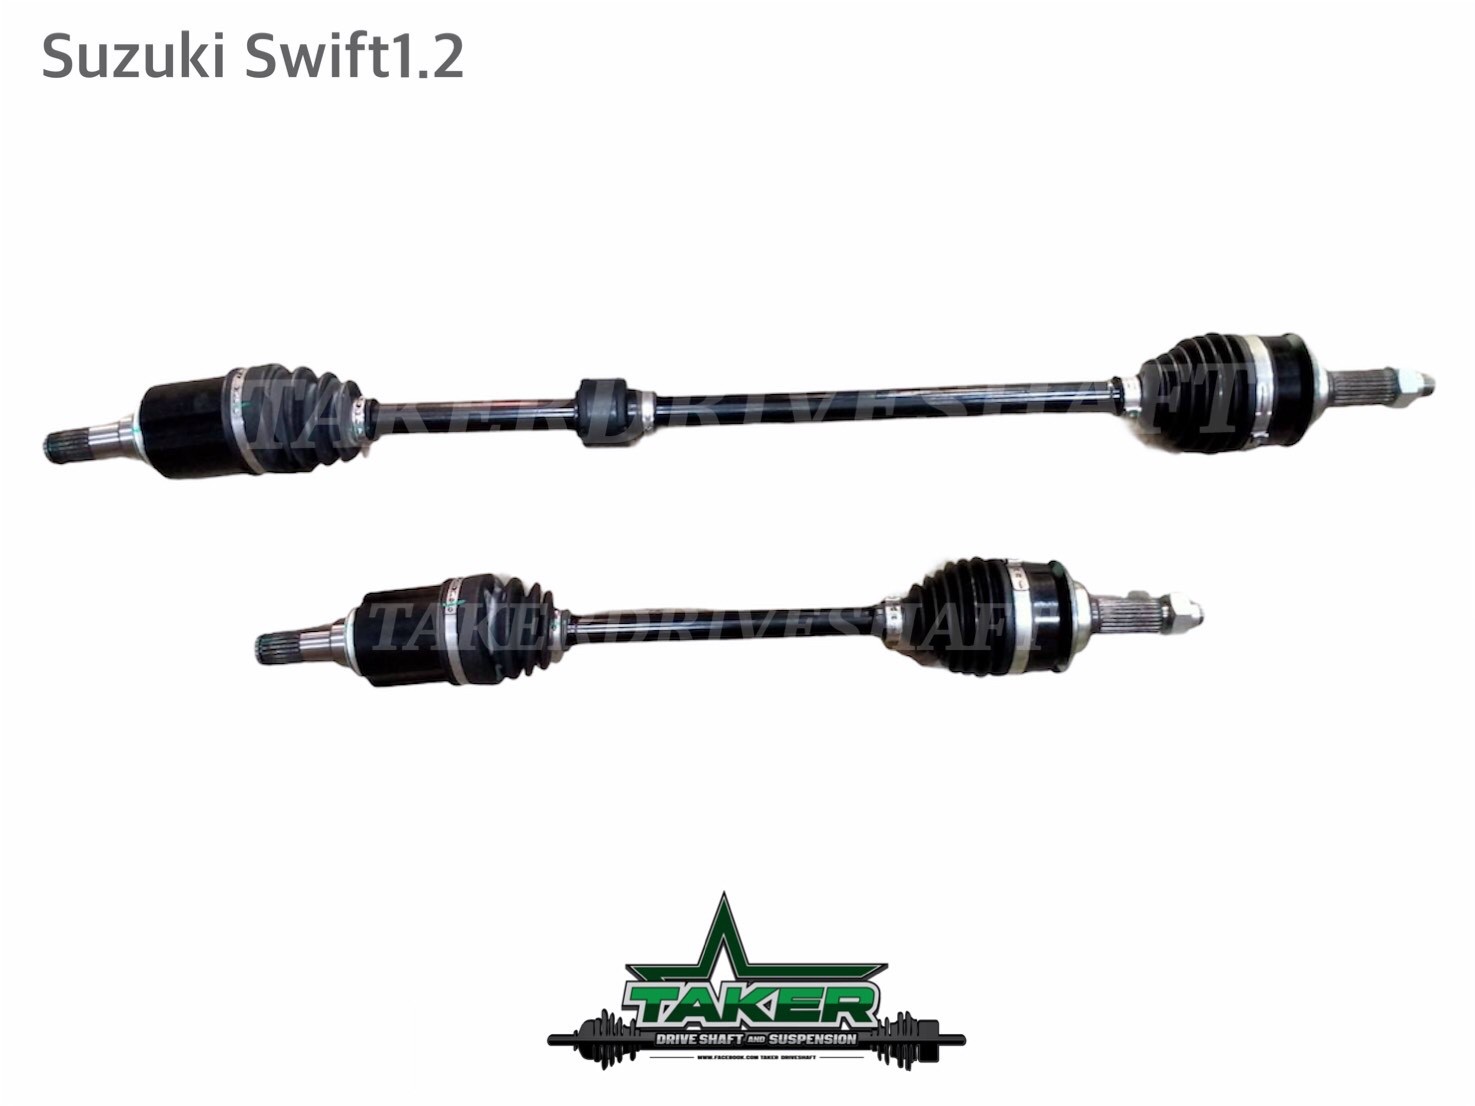 เพลาขับ เพลาขับหน้า Taker Driveshaft แบบ Standard สำหรับ Suzuki Swift เครื่อง1.2 แบบคู่